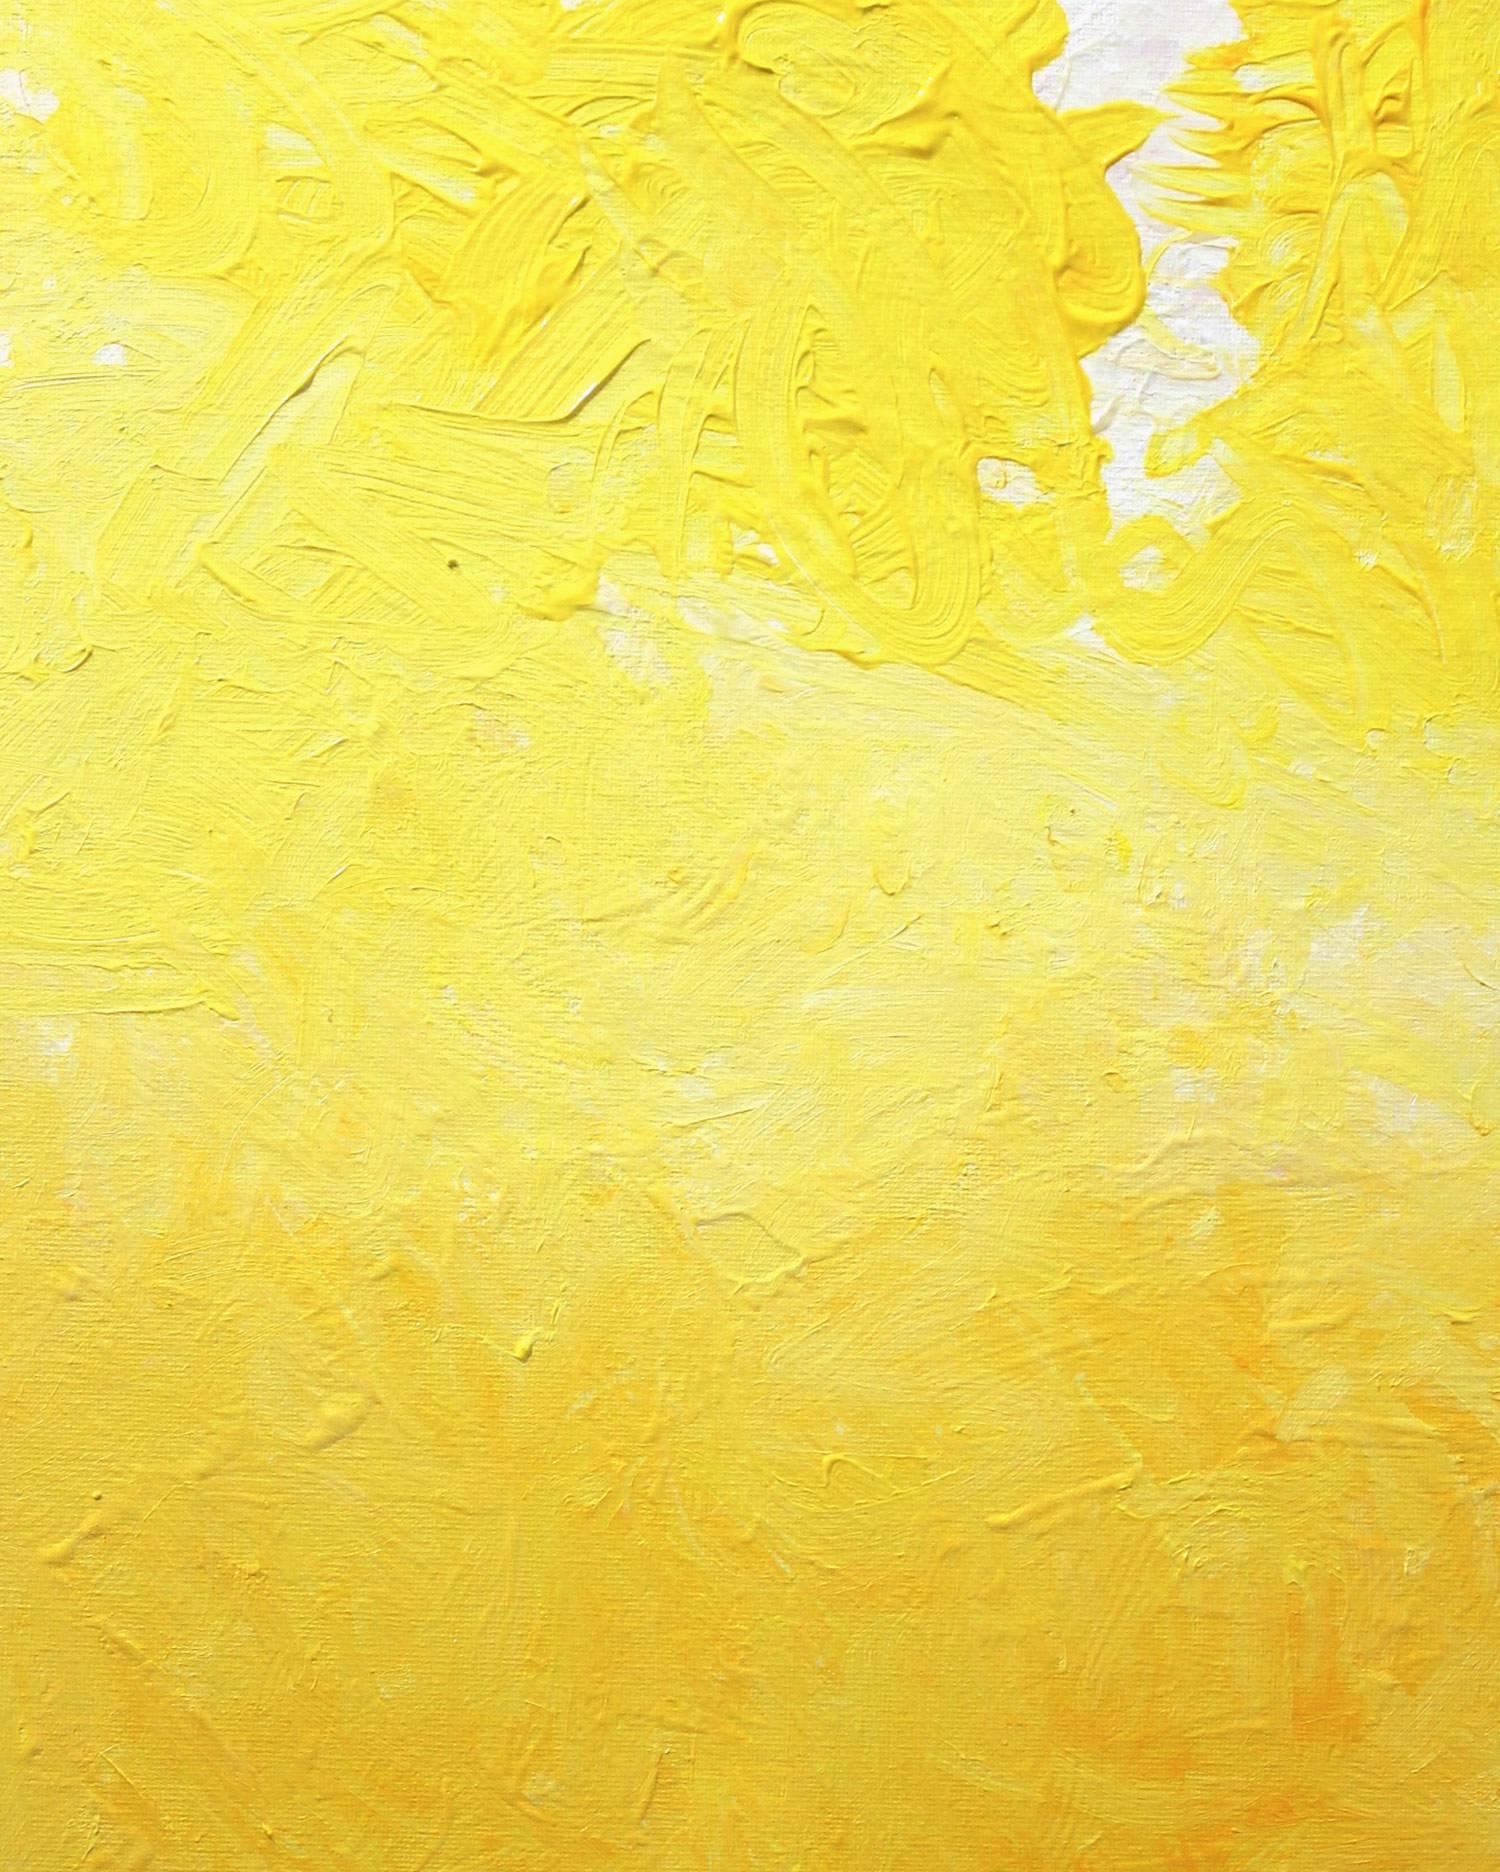 Un matin lumineux en jaune et blanc - Contemporain Painting par Robert Gregory Phillips